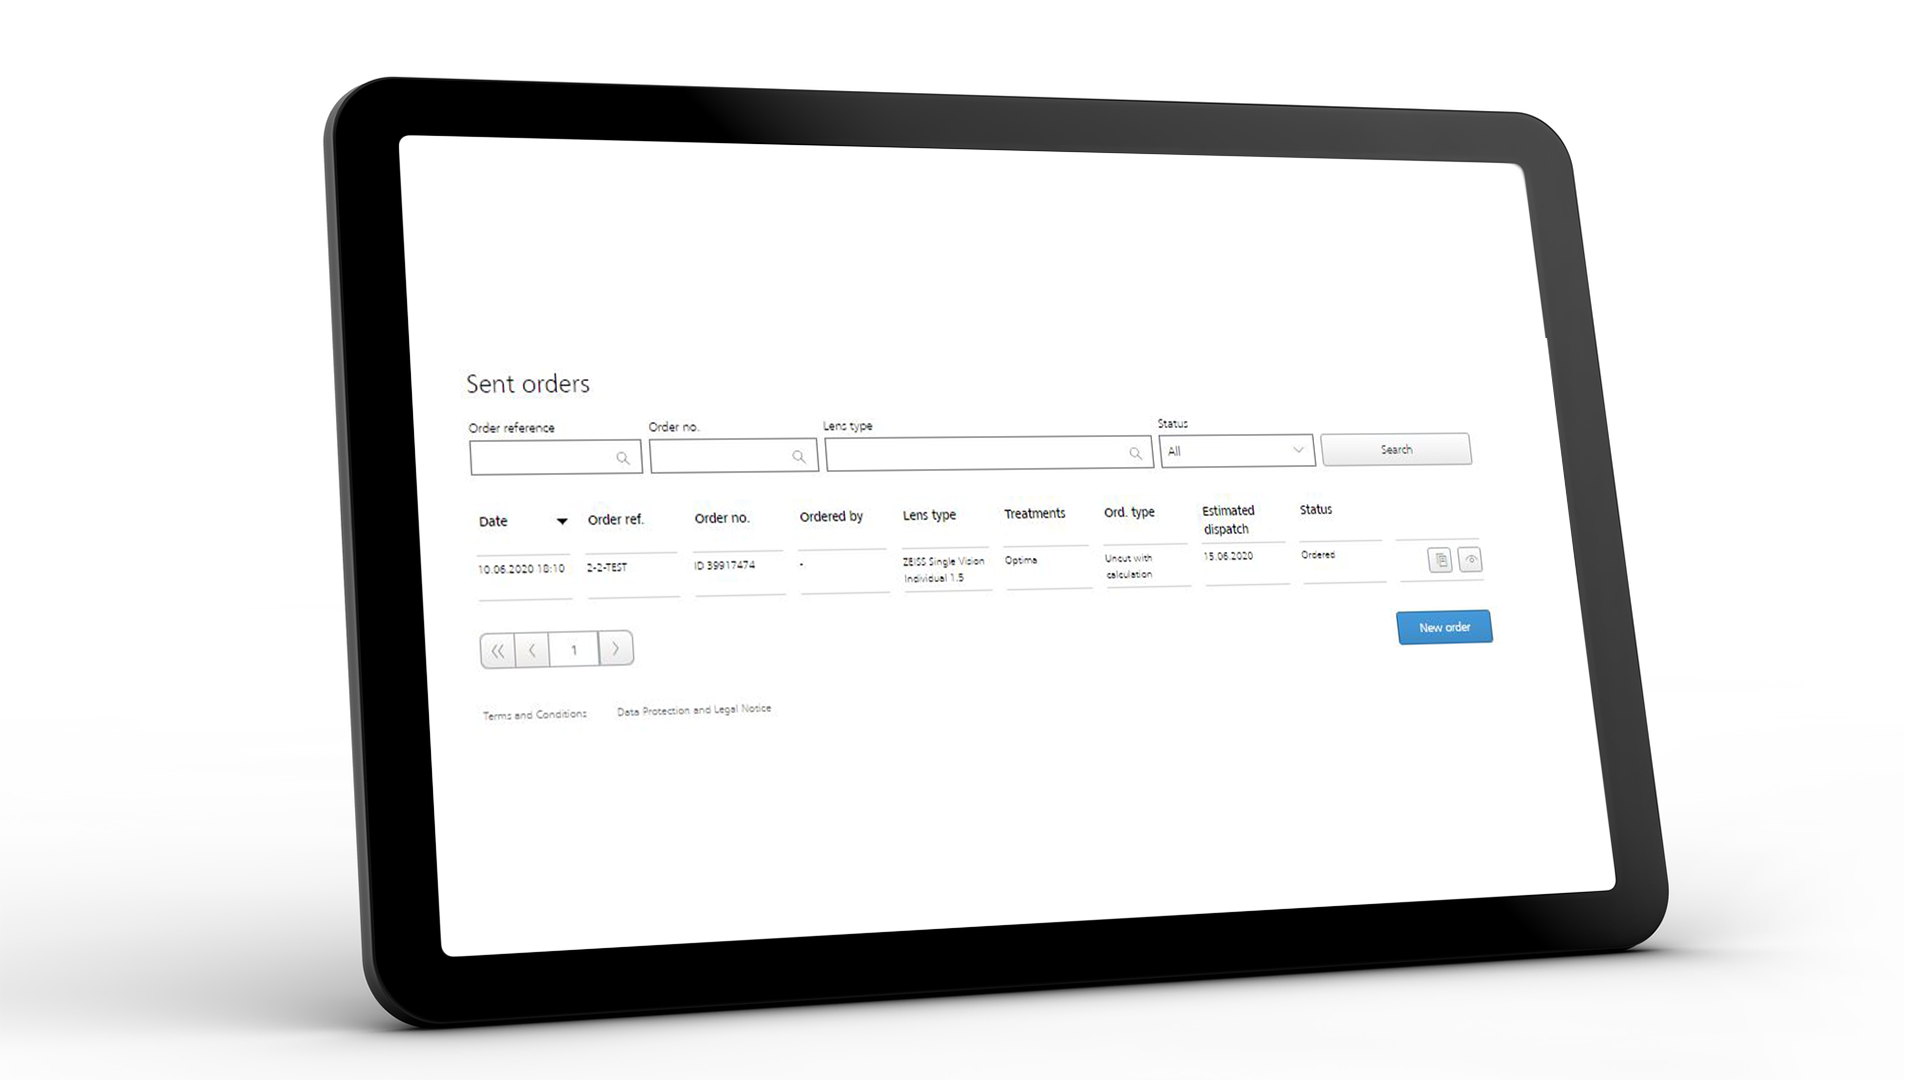 Schermo del tablet che mostra l'interfaccia ZEISS VISUSTORE per gli ordini spediti 